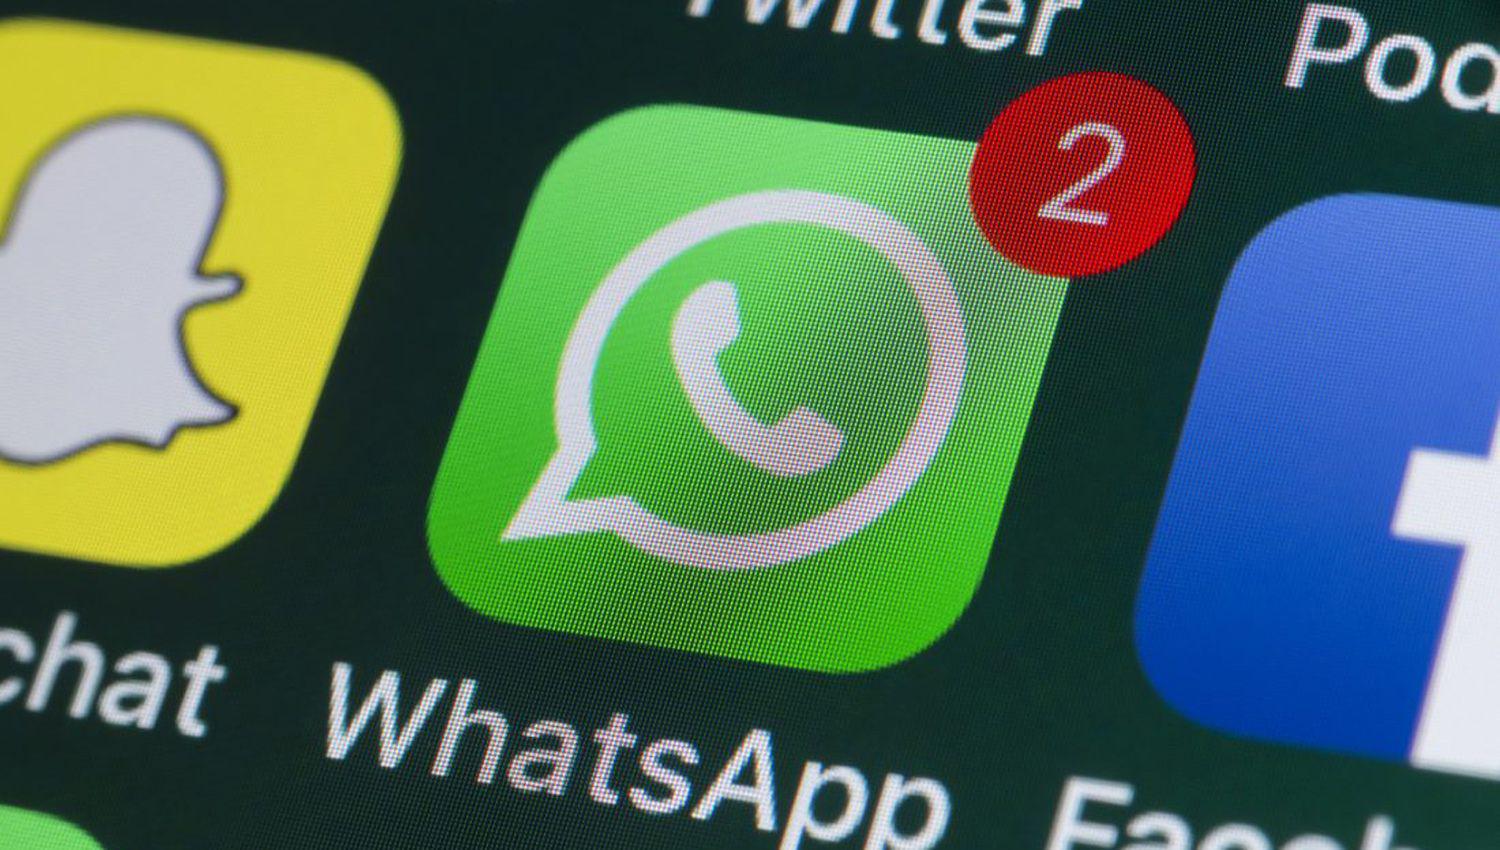 Circula falso mensaje que hace creer que es posible evitar los cambios en las poliacuteticas de WhatsApp